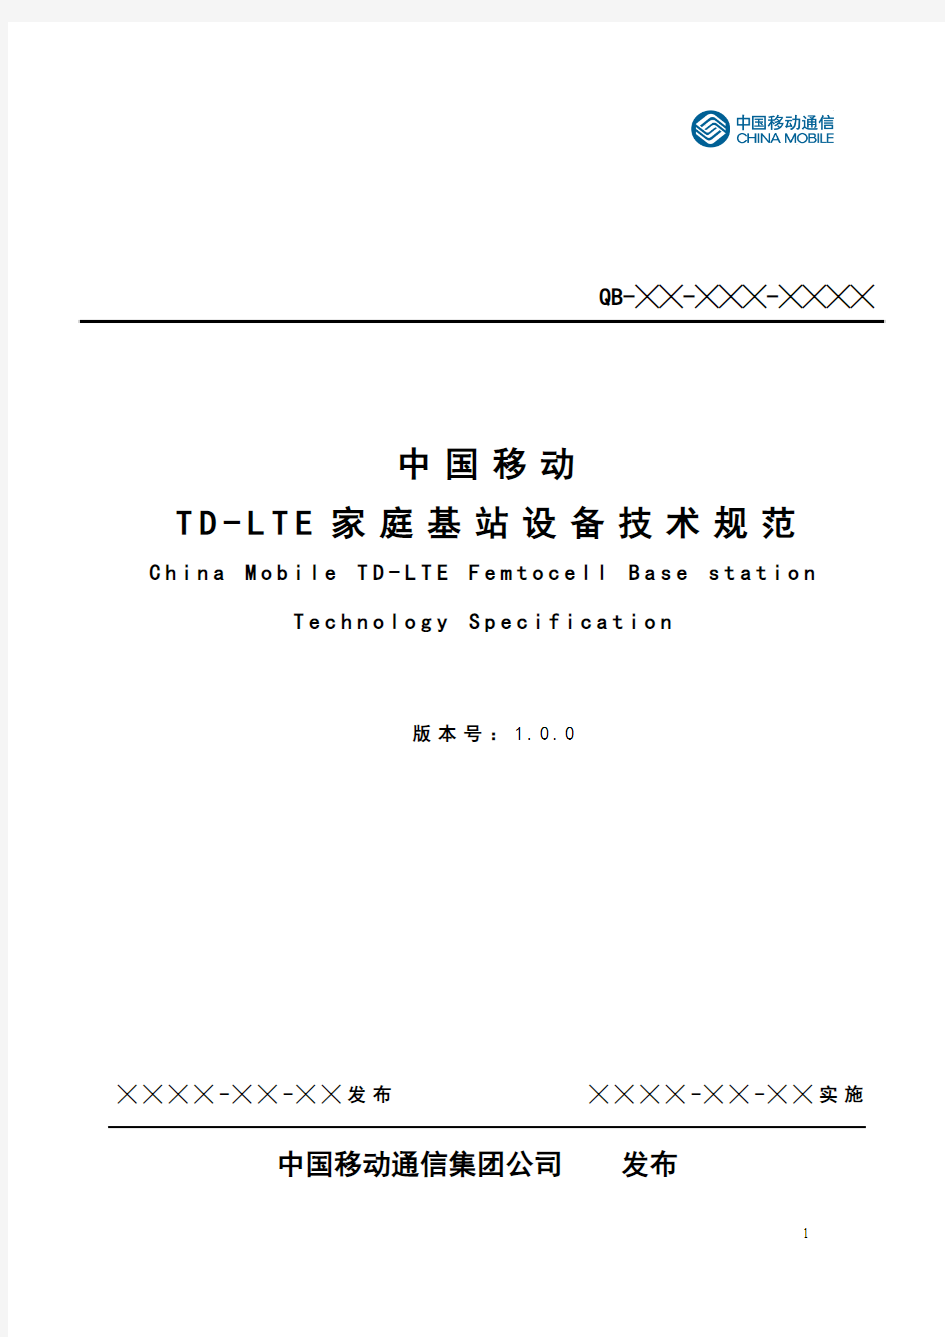 中国移动TD-LTE家庭基站设备技术规范_V1.0.5概述